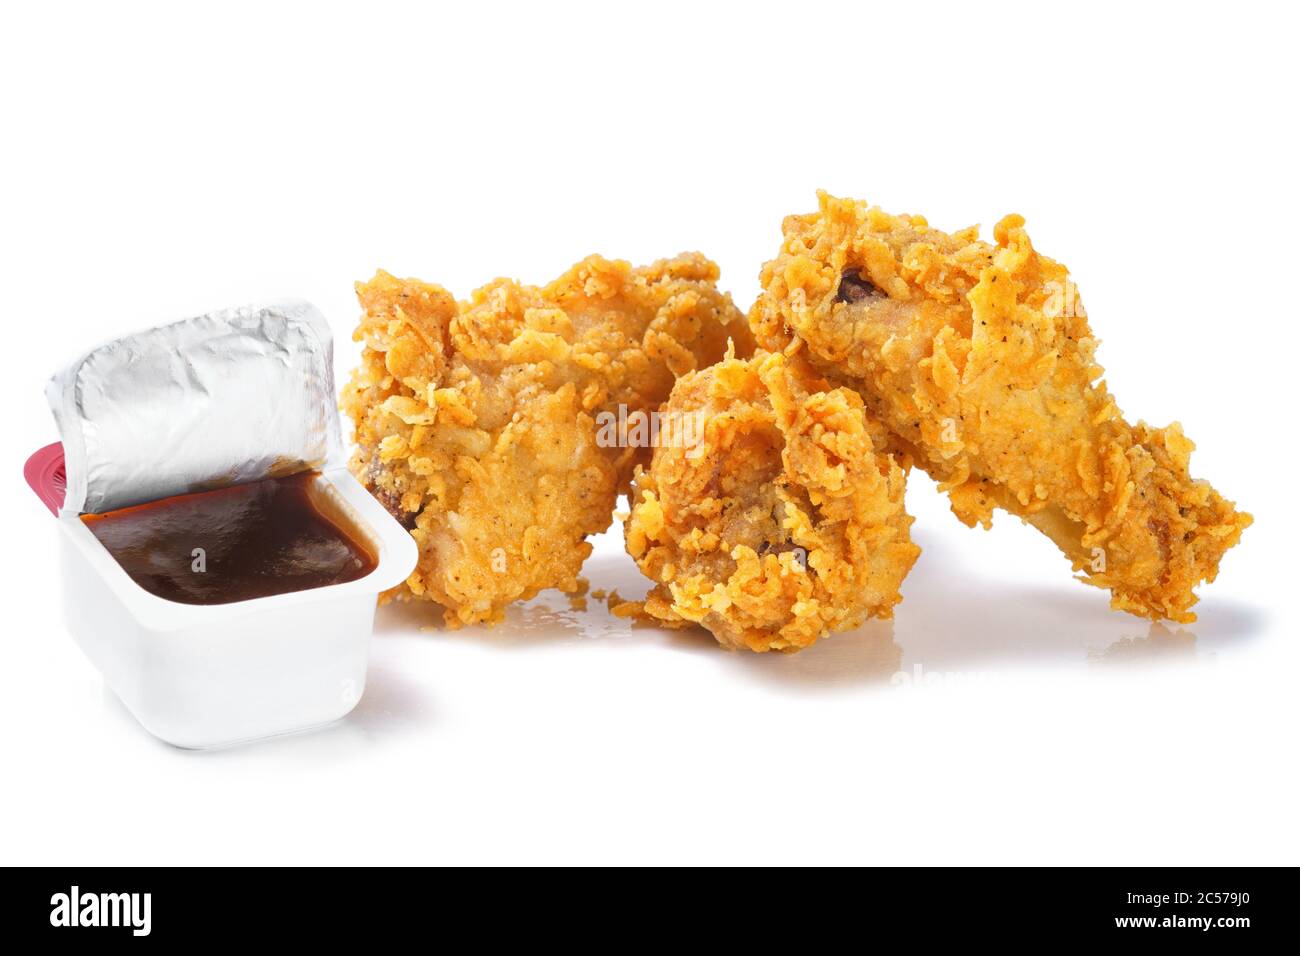 Foto von knusprig gebratenen Hühnerbeinen mit Grillsauce Stockfoto